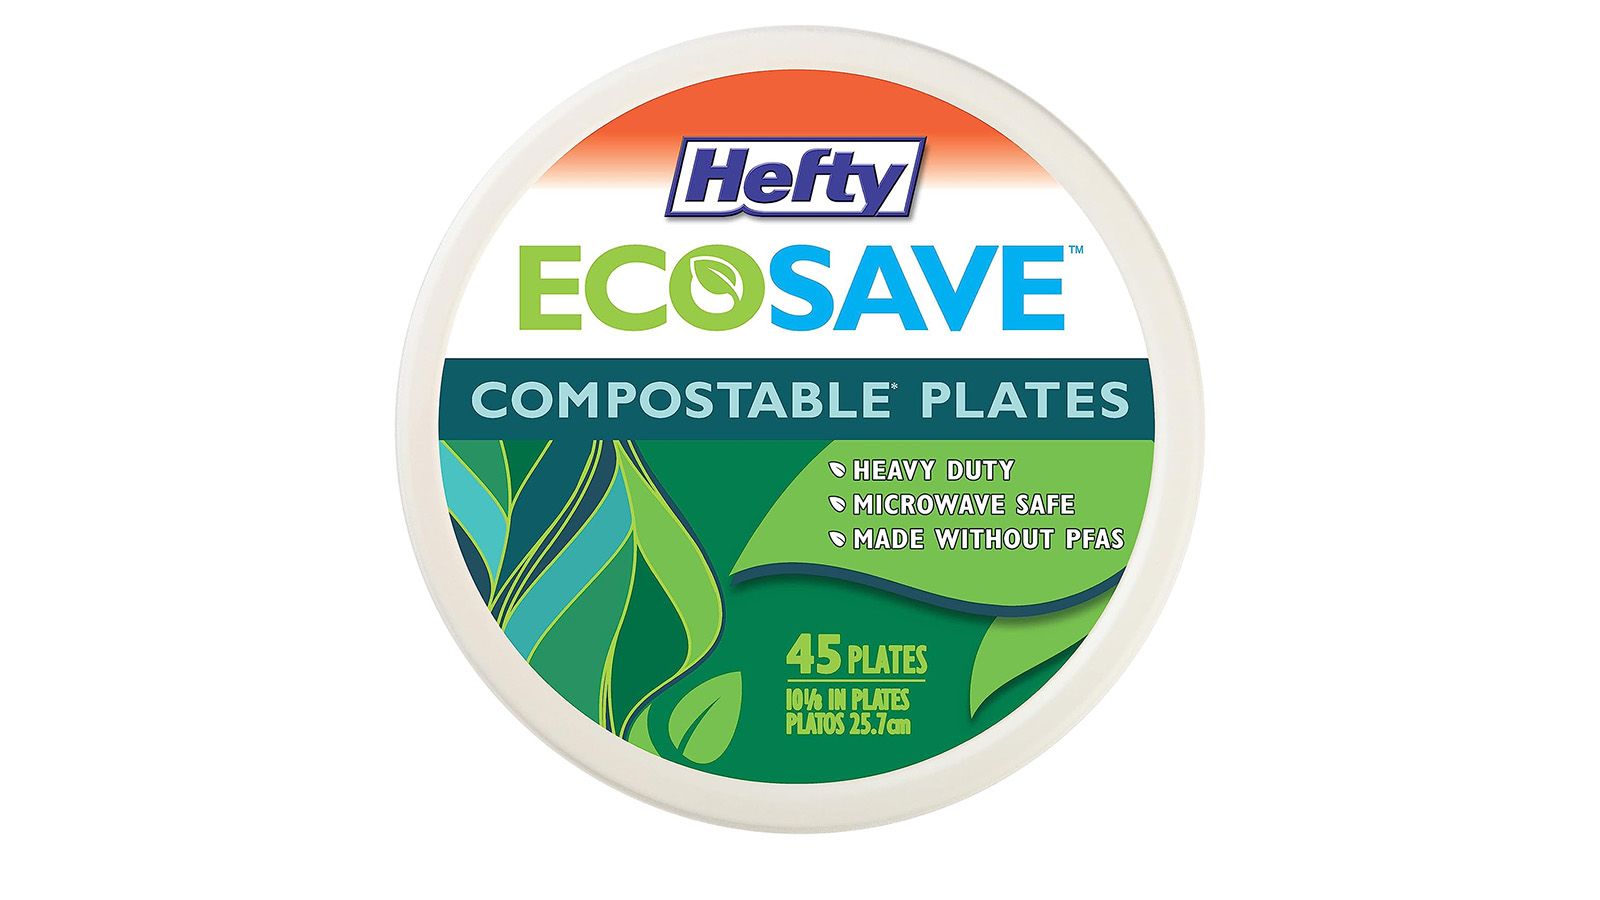 https://media.cnn.com/api/v1/images/stellar/prod/hefty-compostable-plates.jpg?c=original